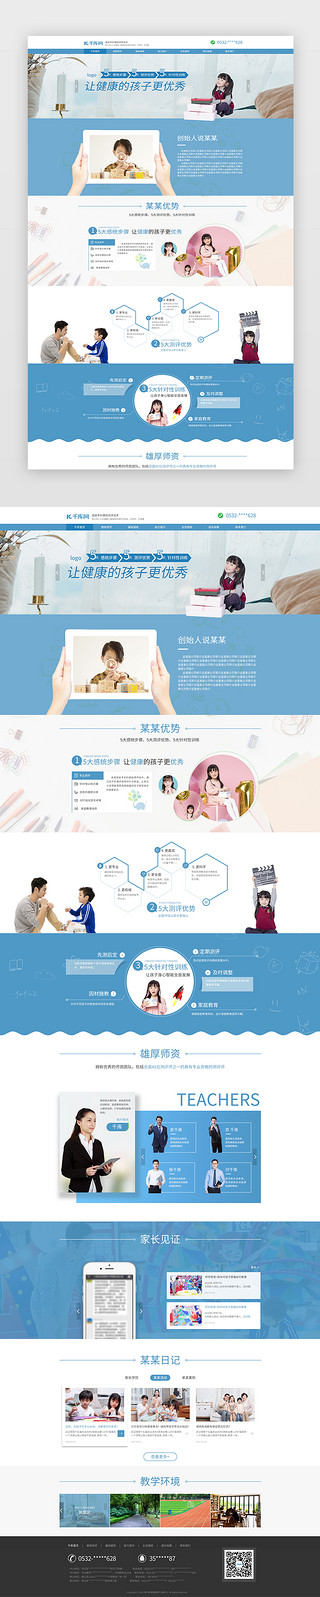 清新暖色背景UI设计素材_蓝色简约清新教育官网首页